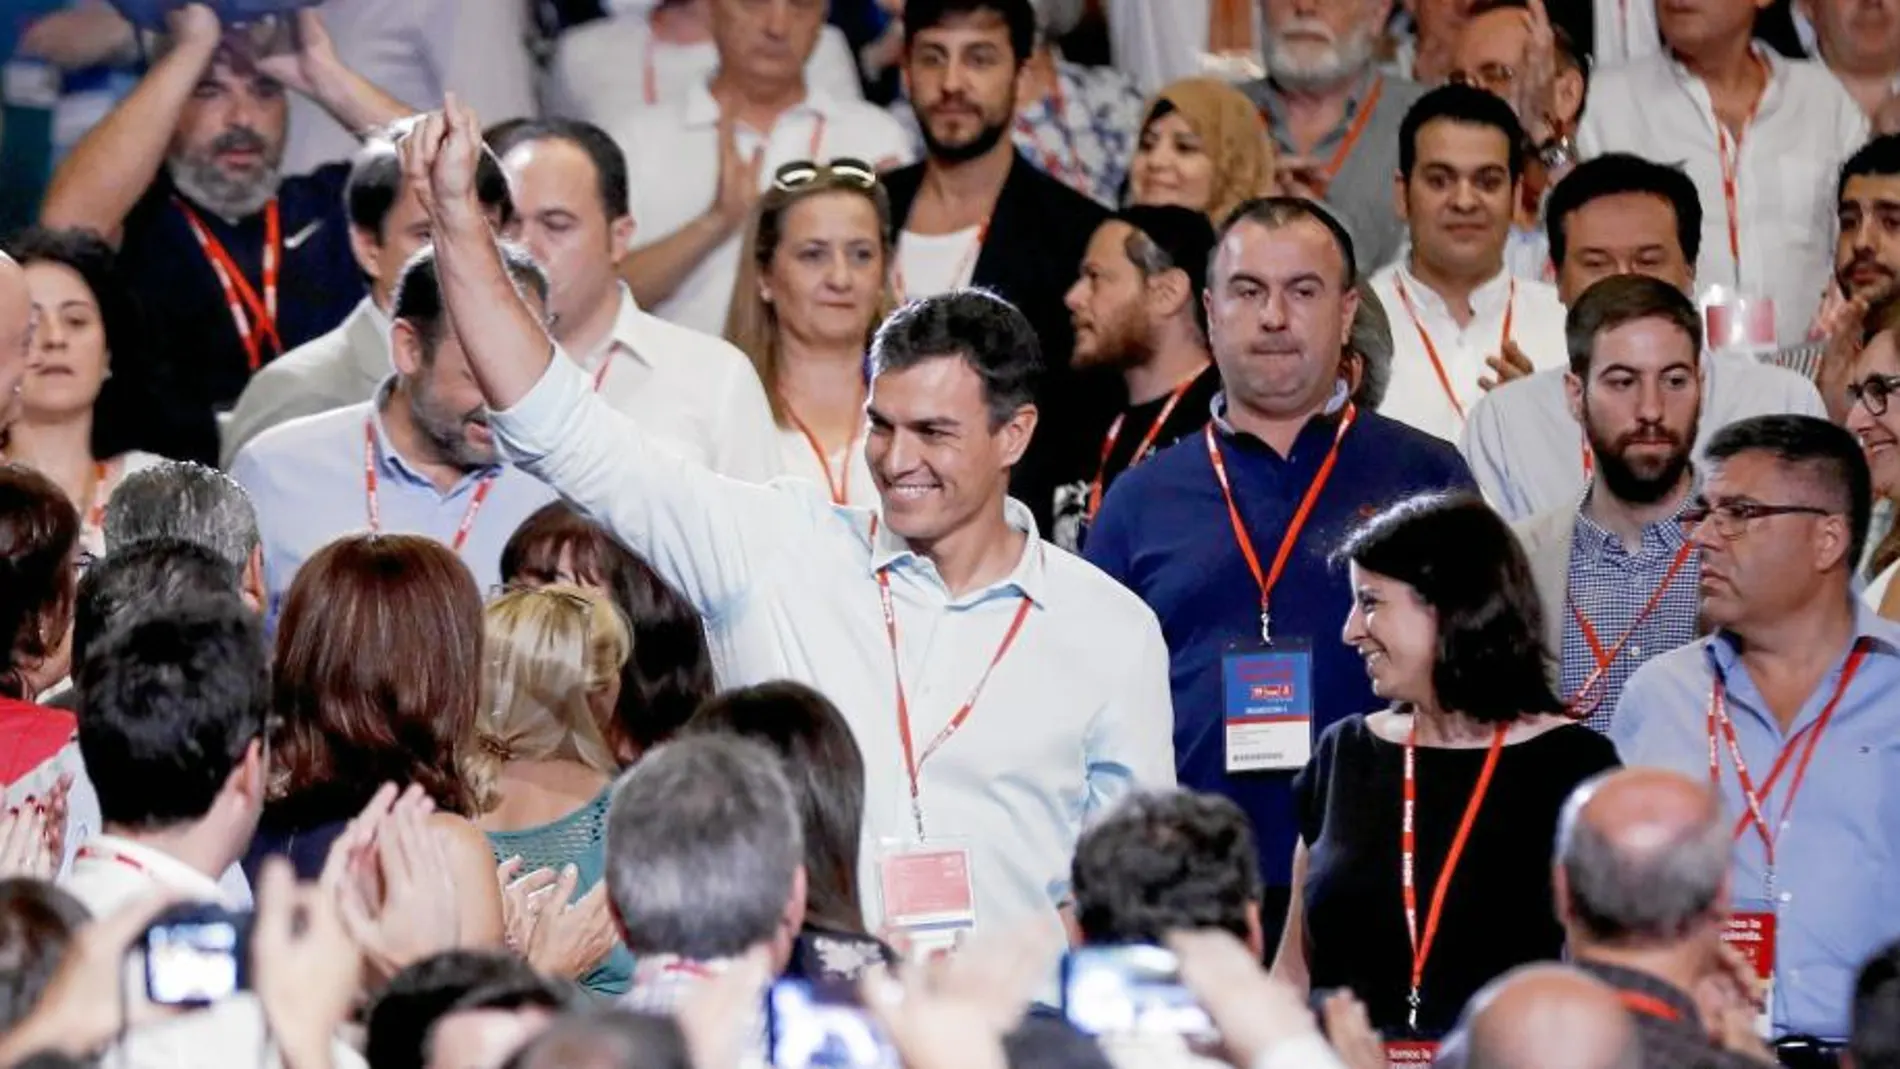 Pedro Sánchez saluda a los asistentes al Congreso. Unos le aplauden y otros mantienen la compostura con caras de circunstancias